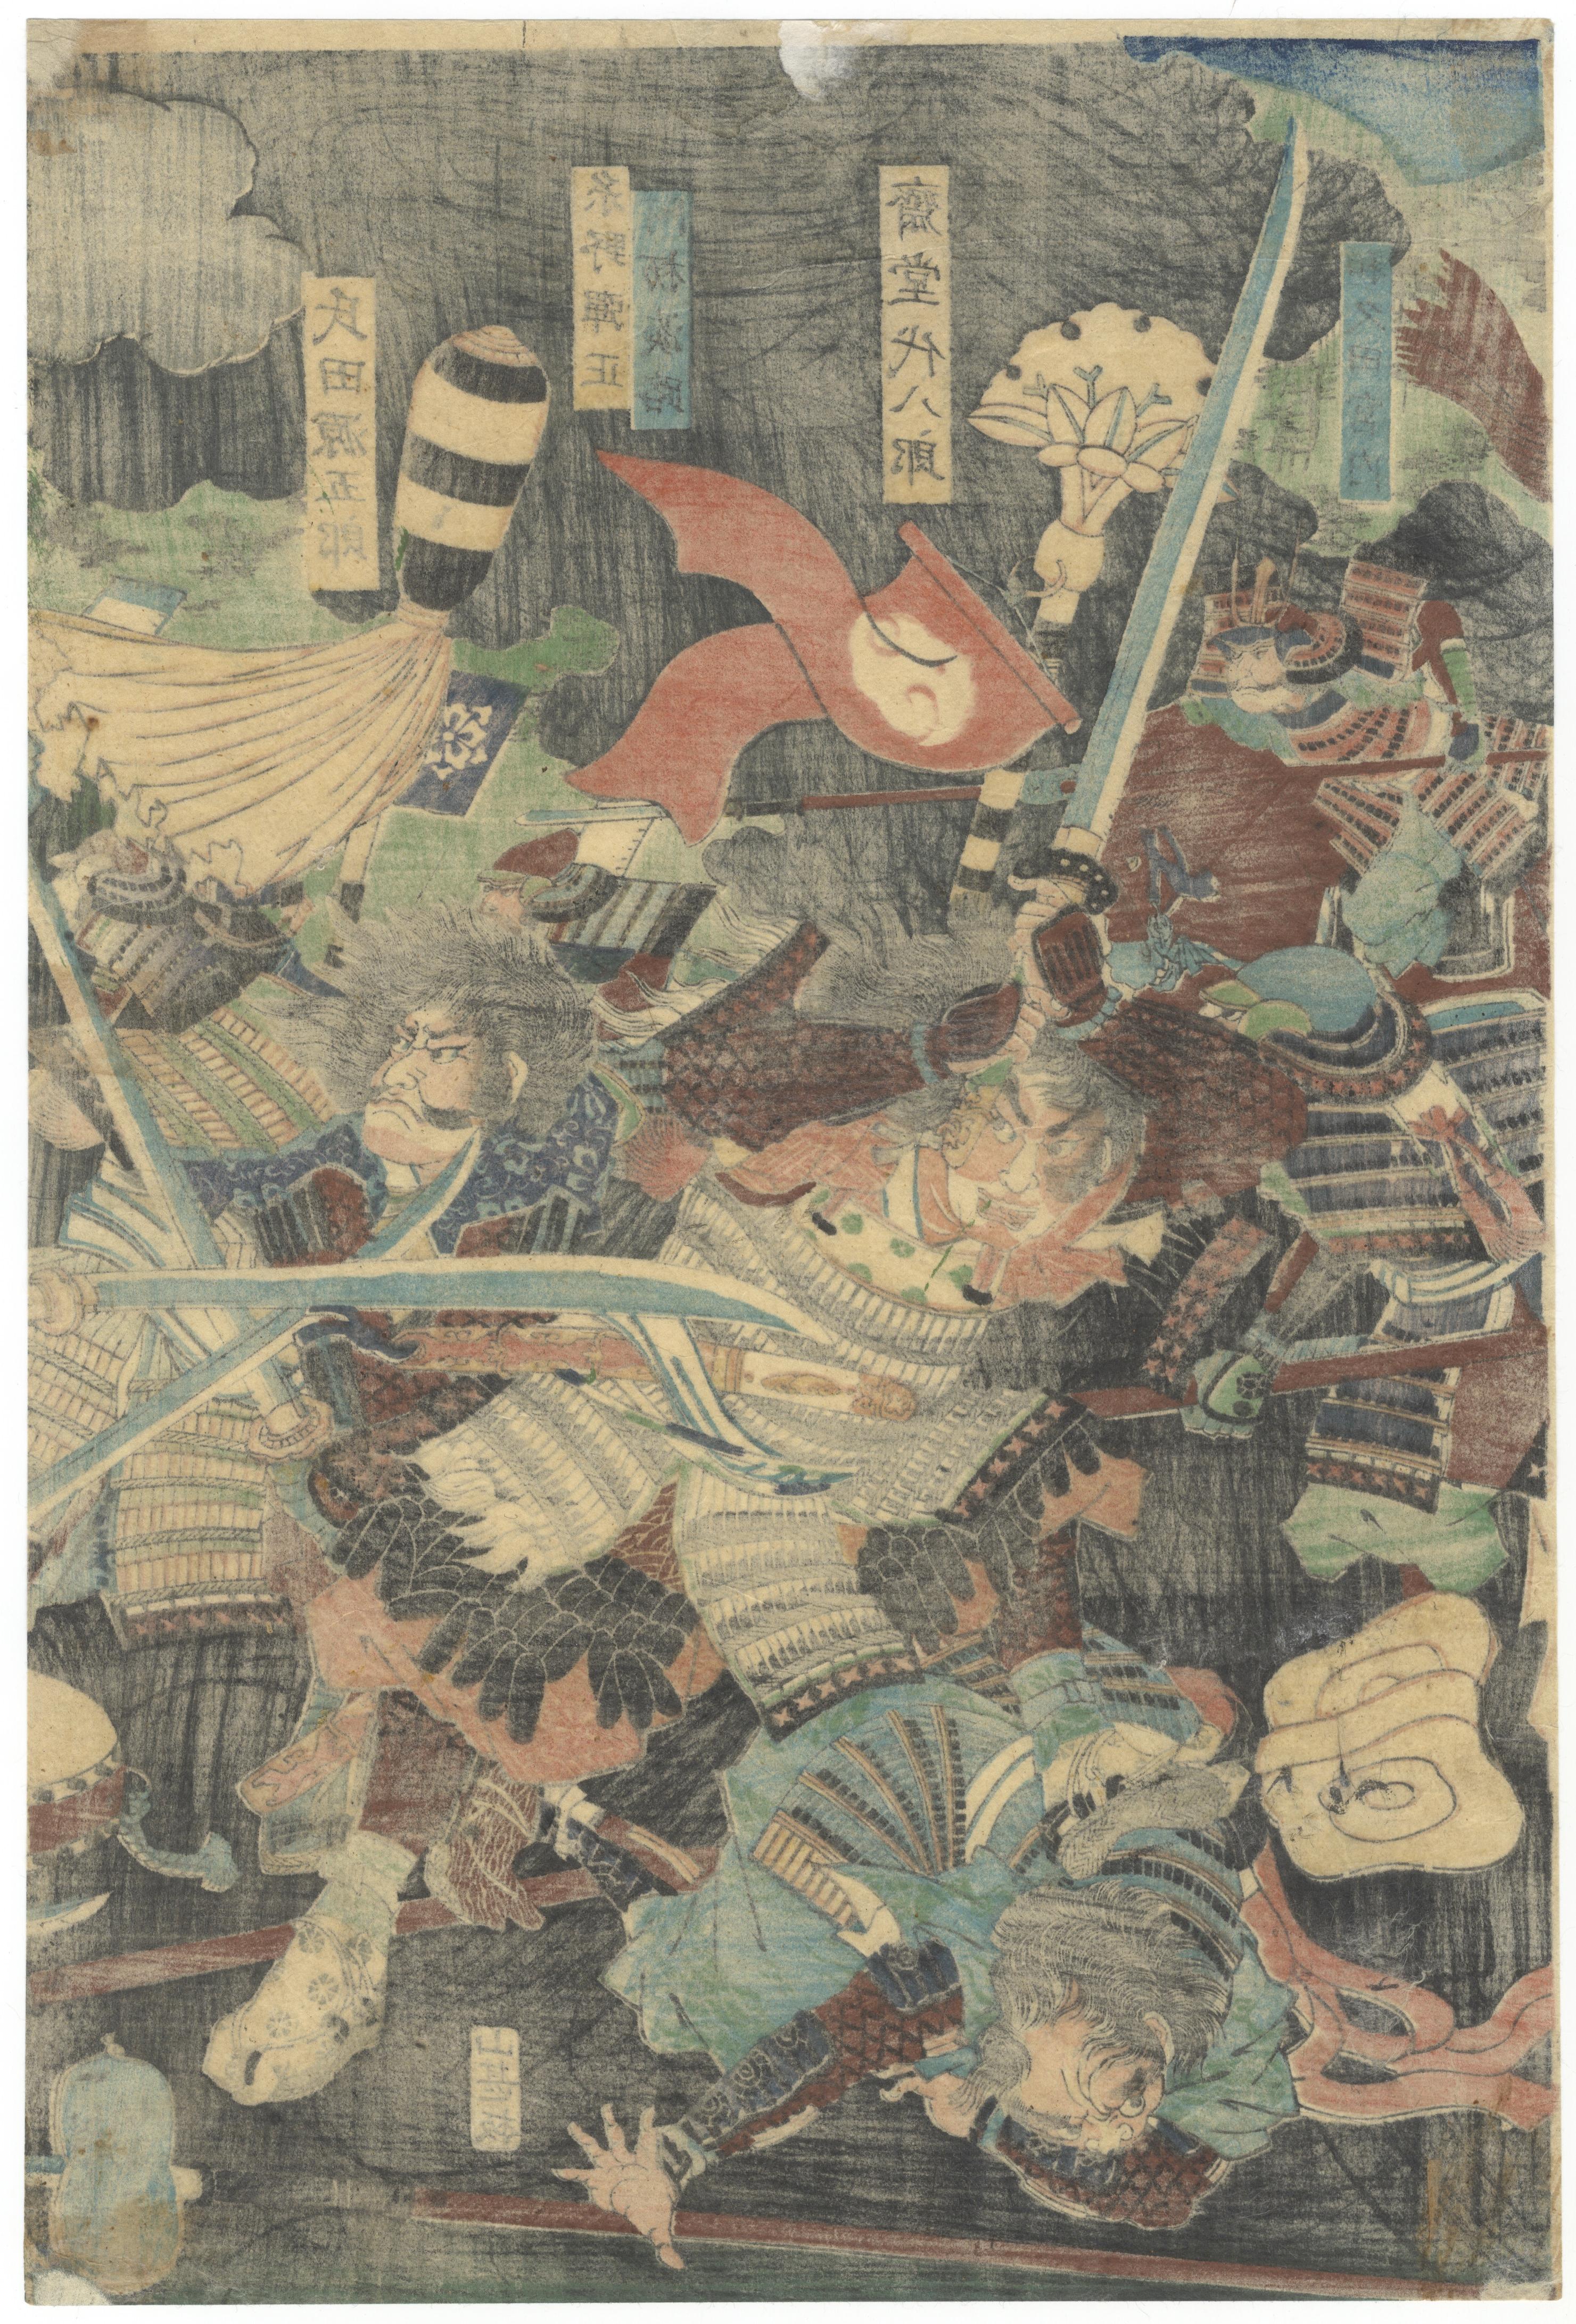 Sengoku Period, Yoshitoshi, Original Japanese Woodblock Print, Ukiyo-e, Samurai - Gray Figurative Print by Tsukioka Yoshitoshi